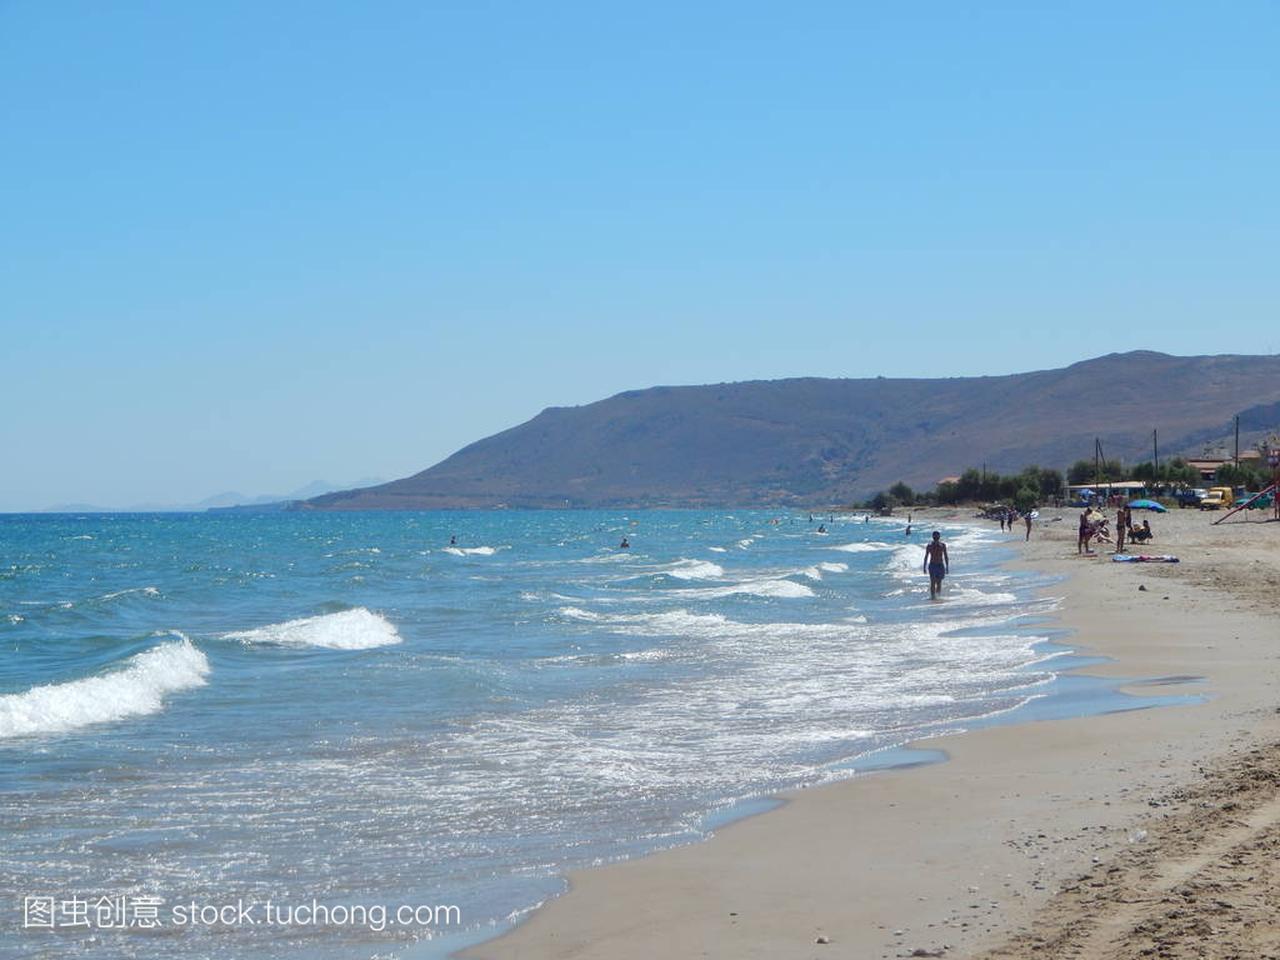 Travel in Greece on the island of Crete mountai